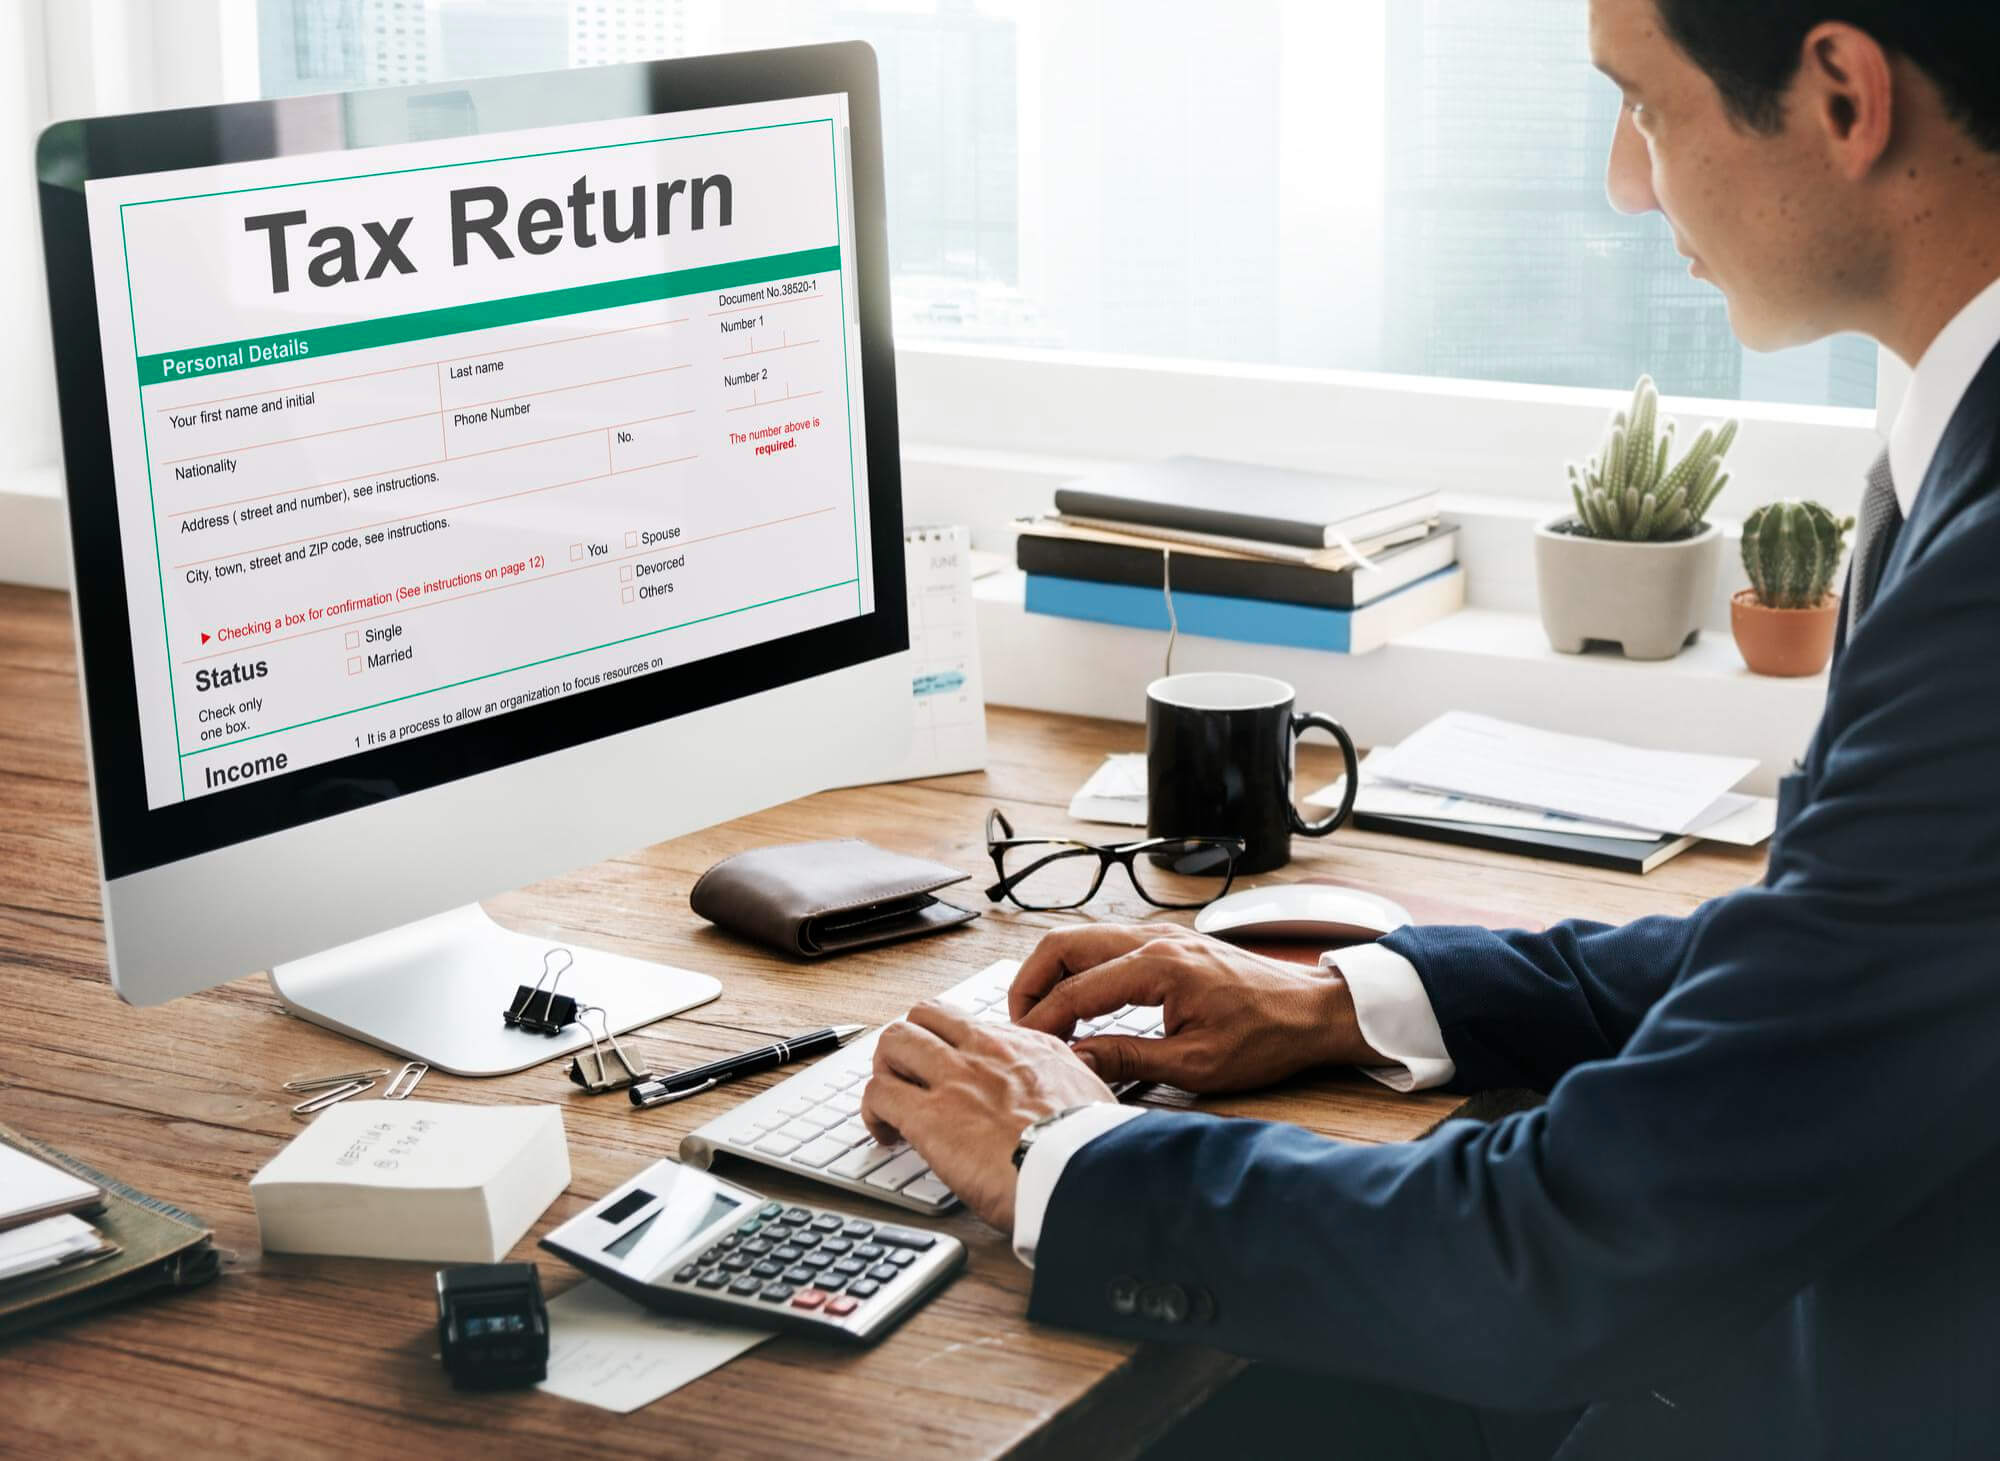 Filing VAT Return via Making Tax Digital in UK